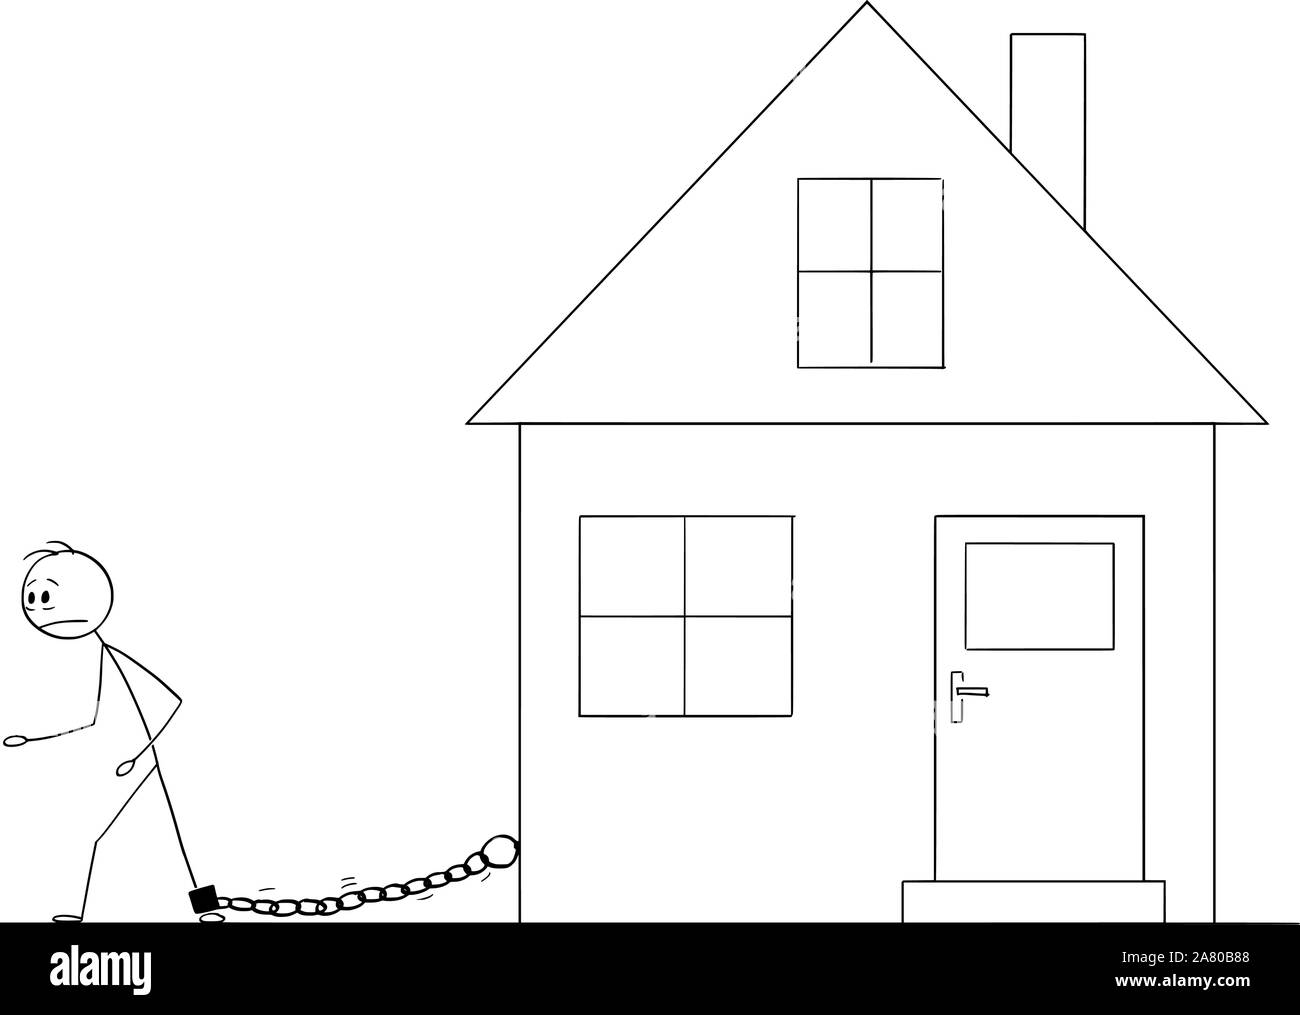 Vektor cartoon Strichmännchen Zeichnen konzeptionelle Darstellung der Mann angekettet von eisernen Kette zu seinem Haus. Konzept der Gehäuse oder der Hypothek Kosten. Stock Vektor